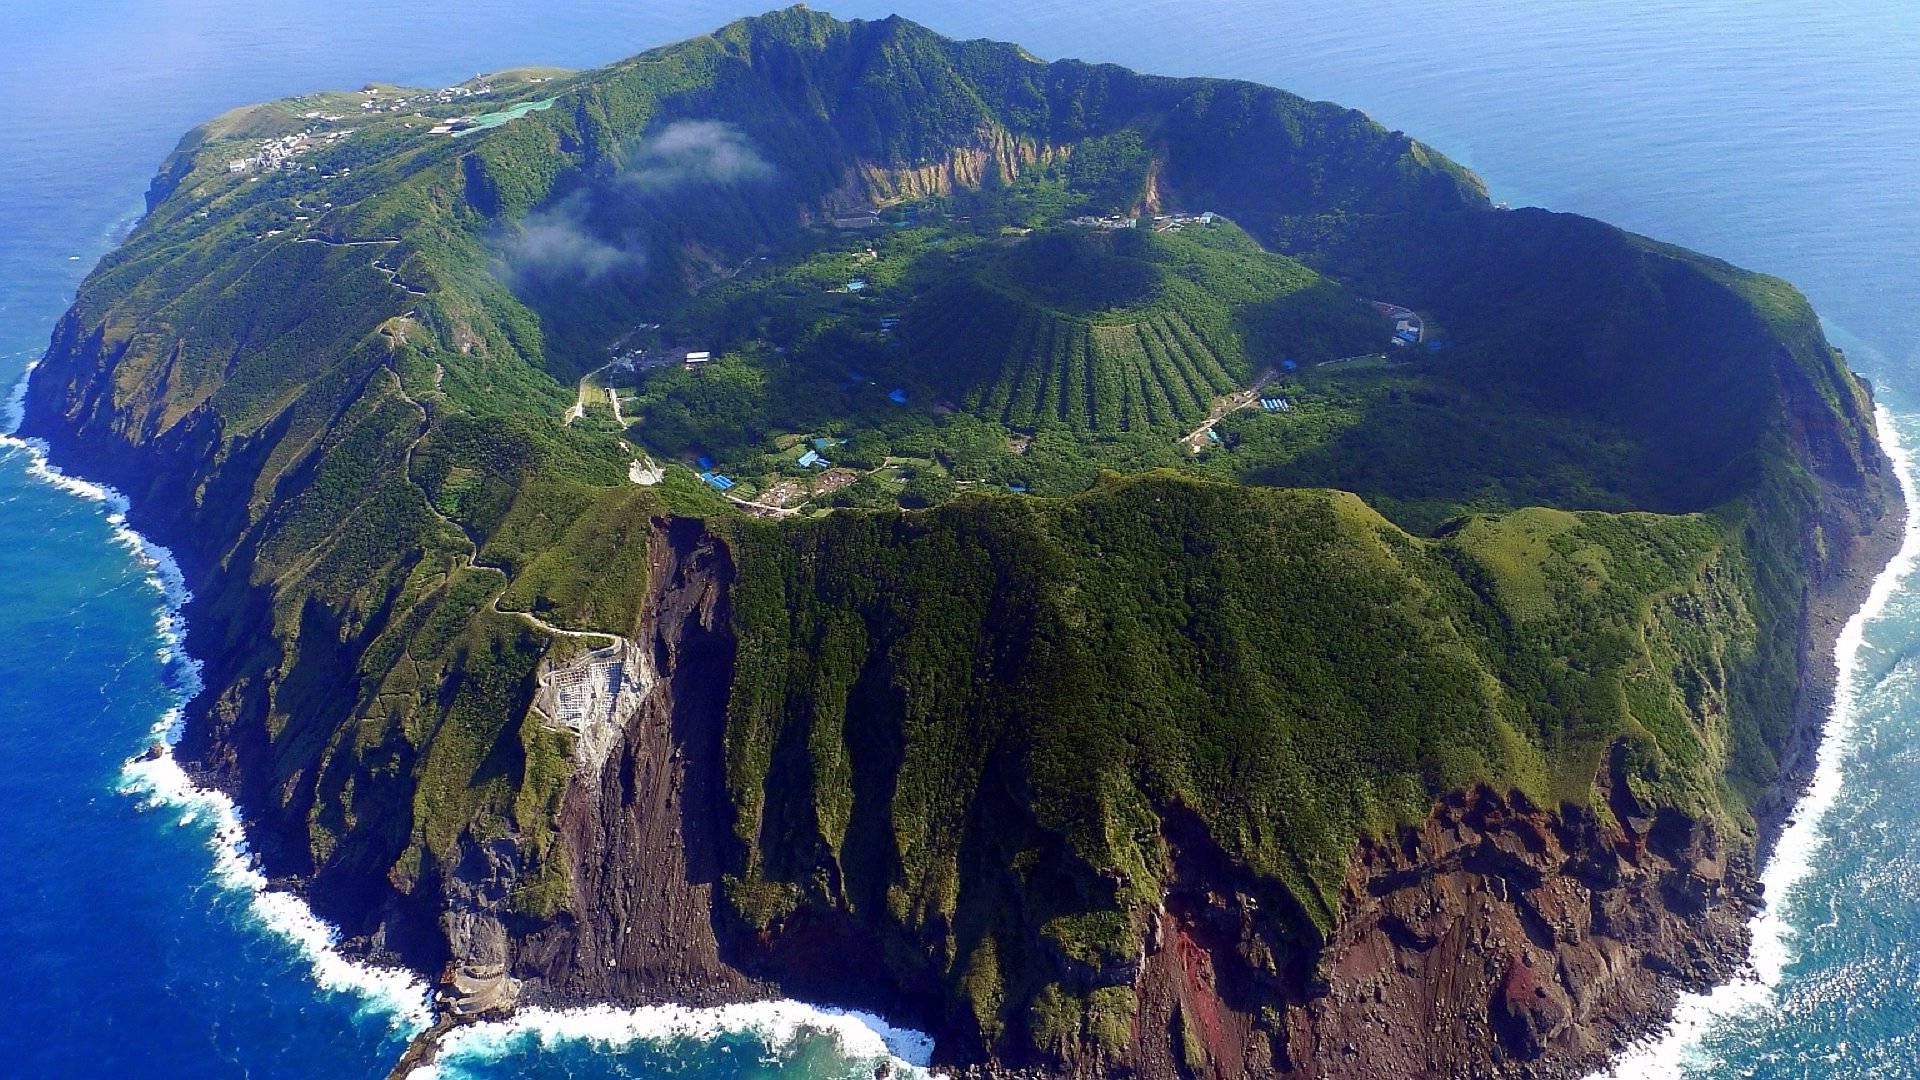 Aogashima Volcanic Island - Japan - Album on Imgur